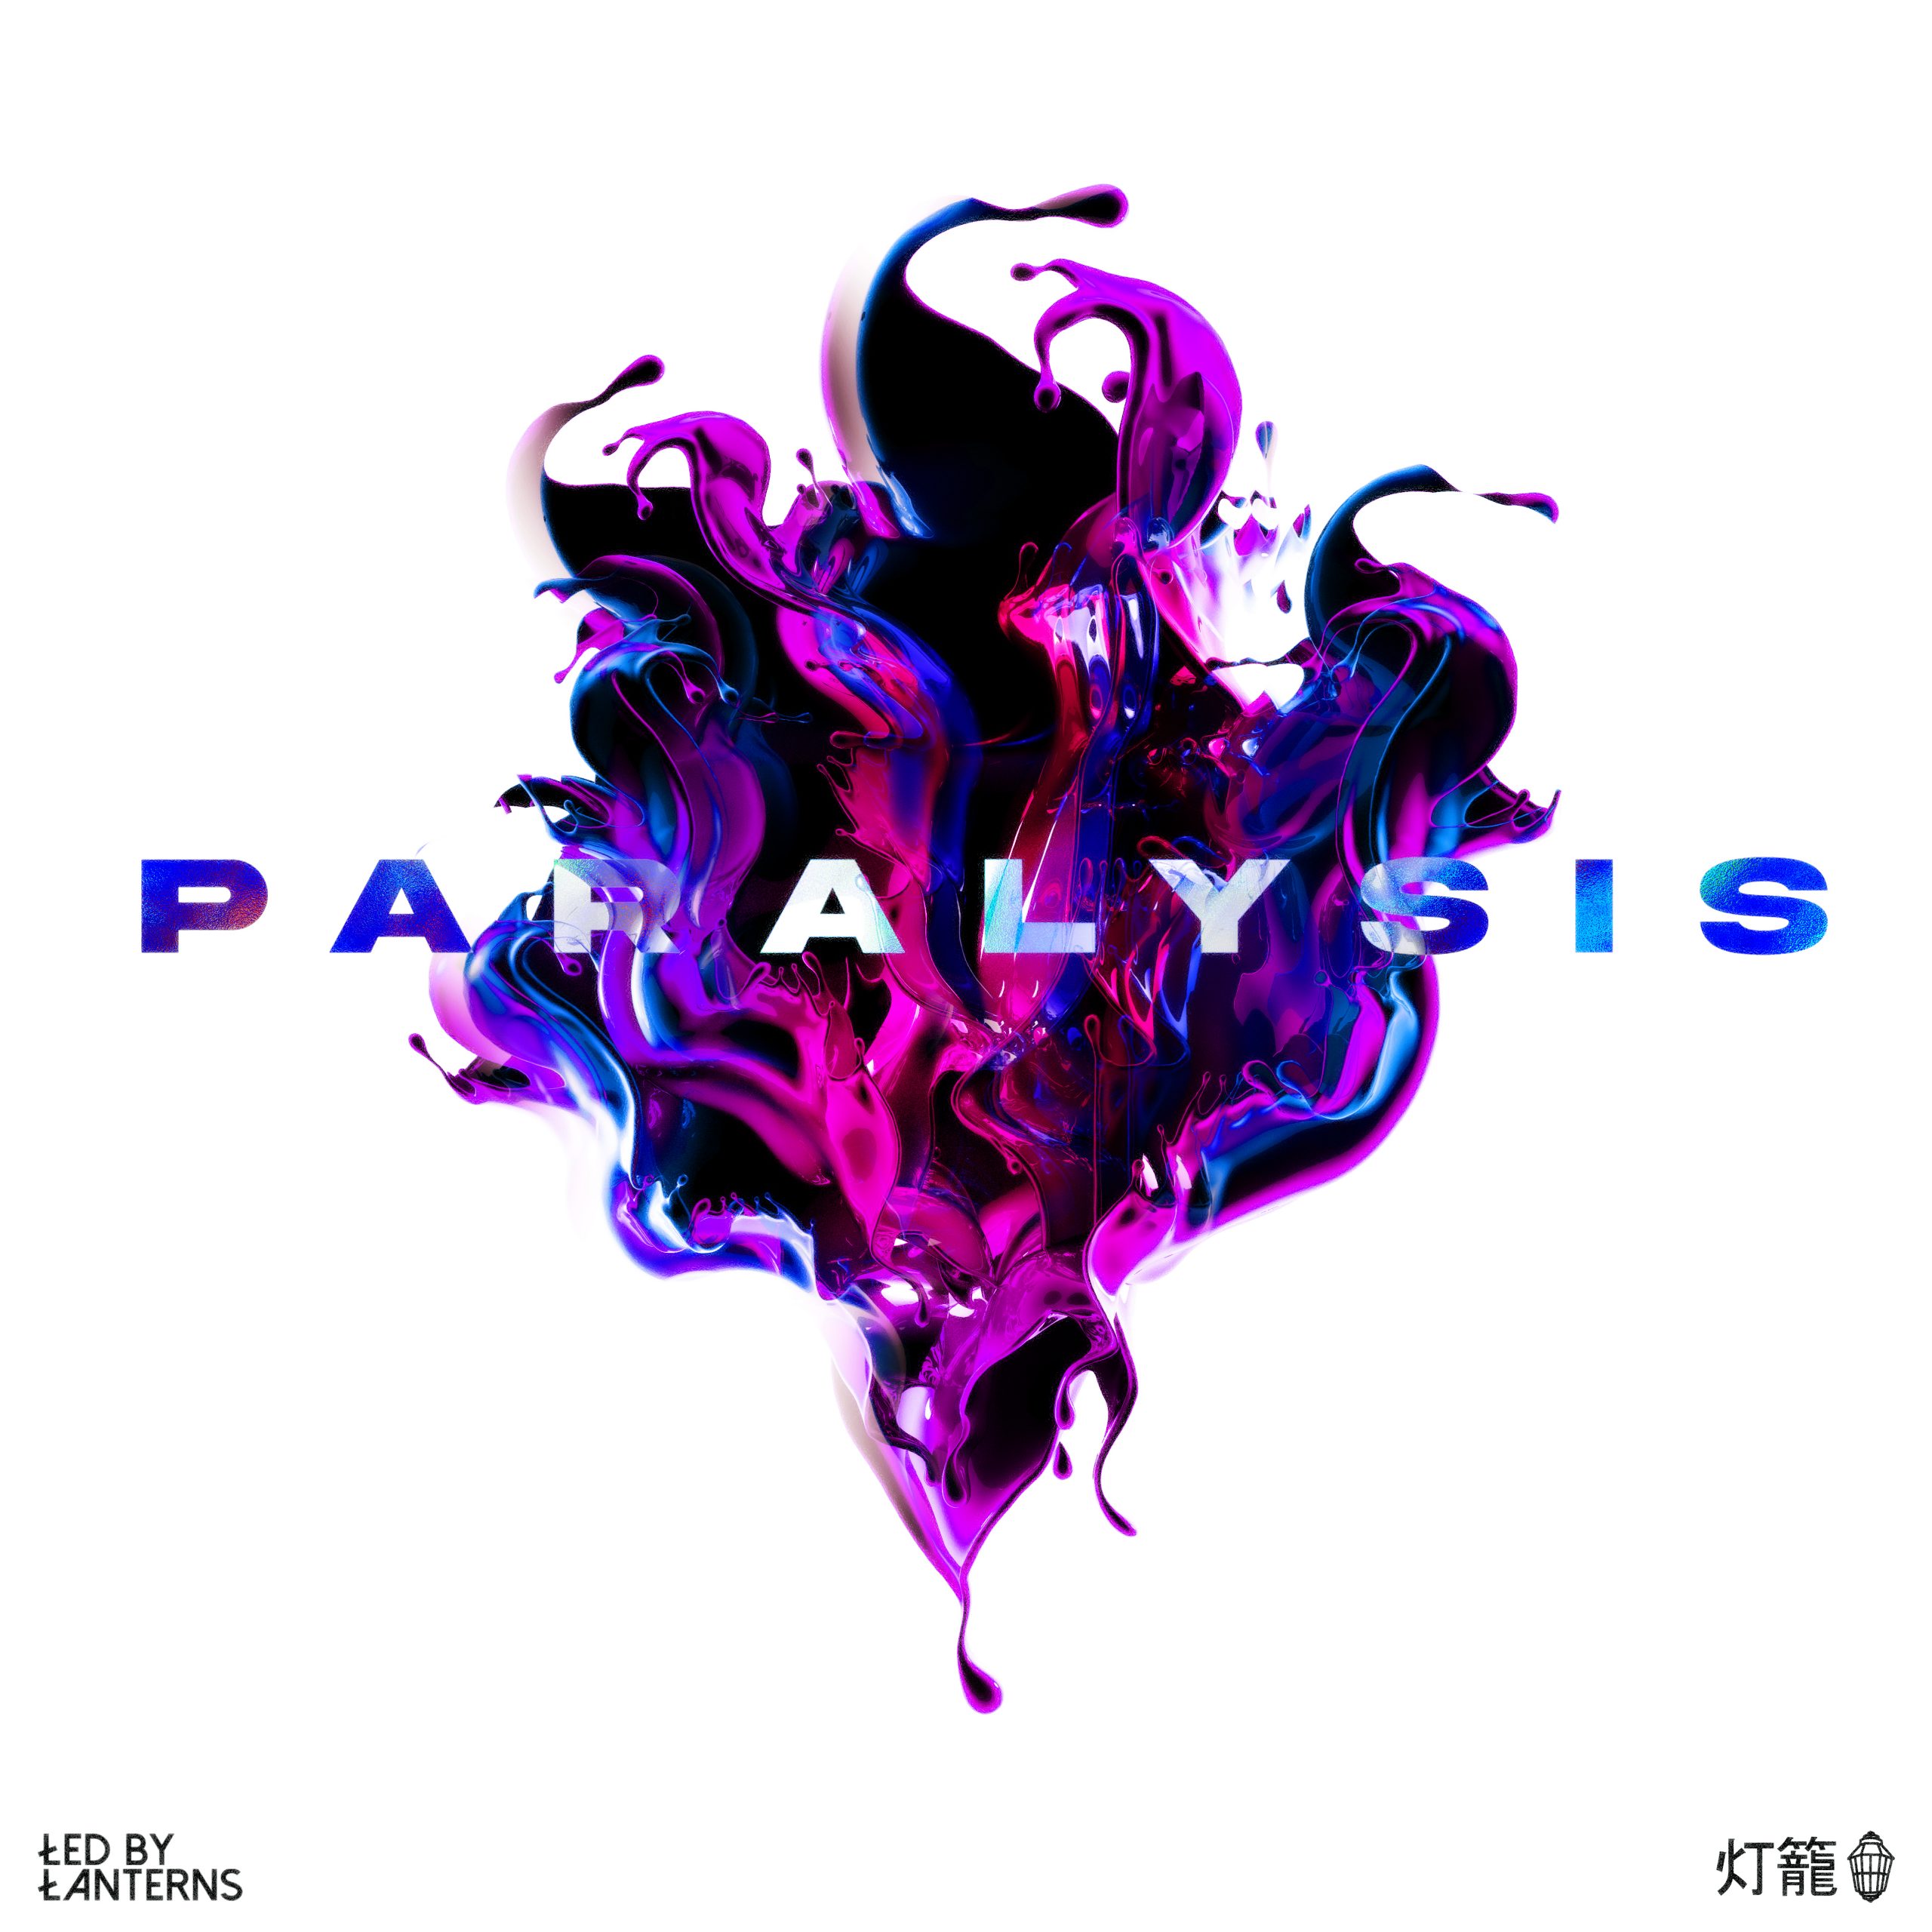 Led By Lanterns – Paralysis